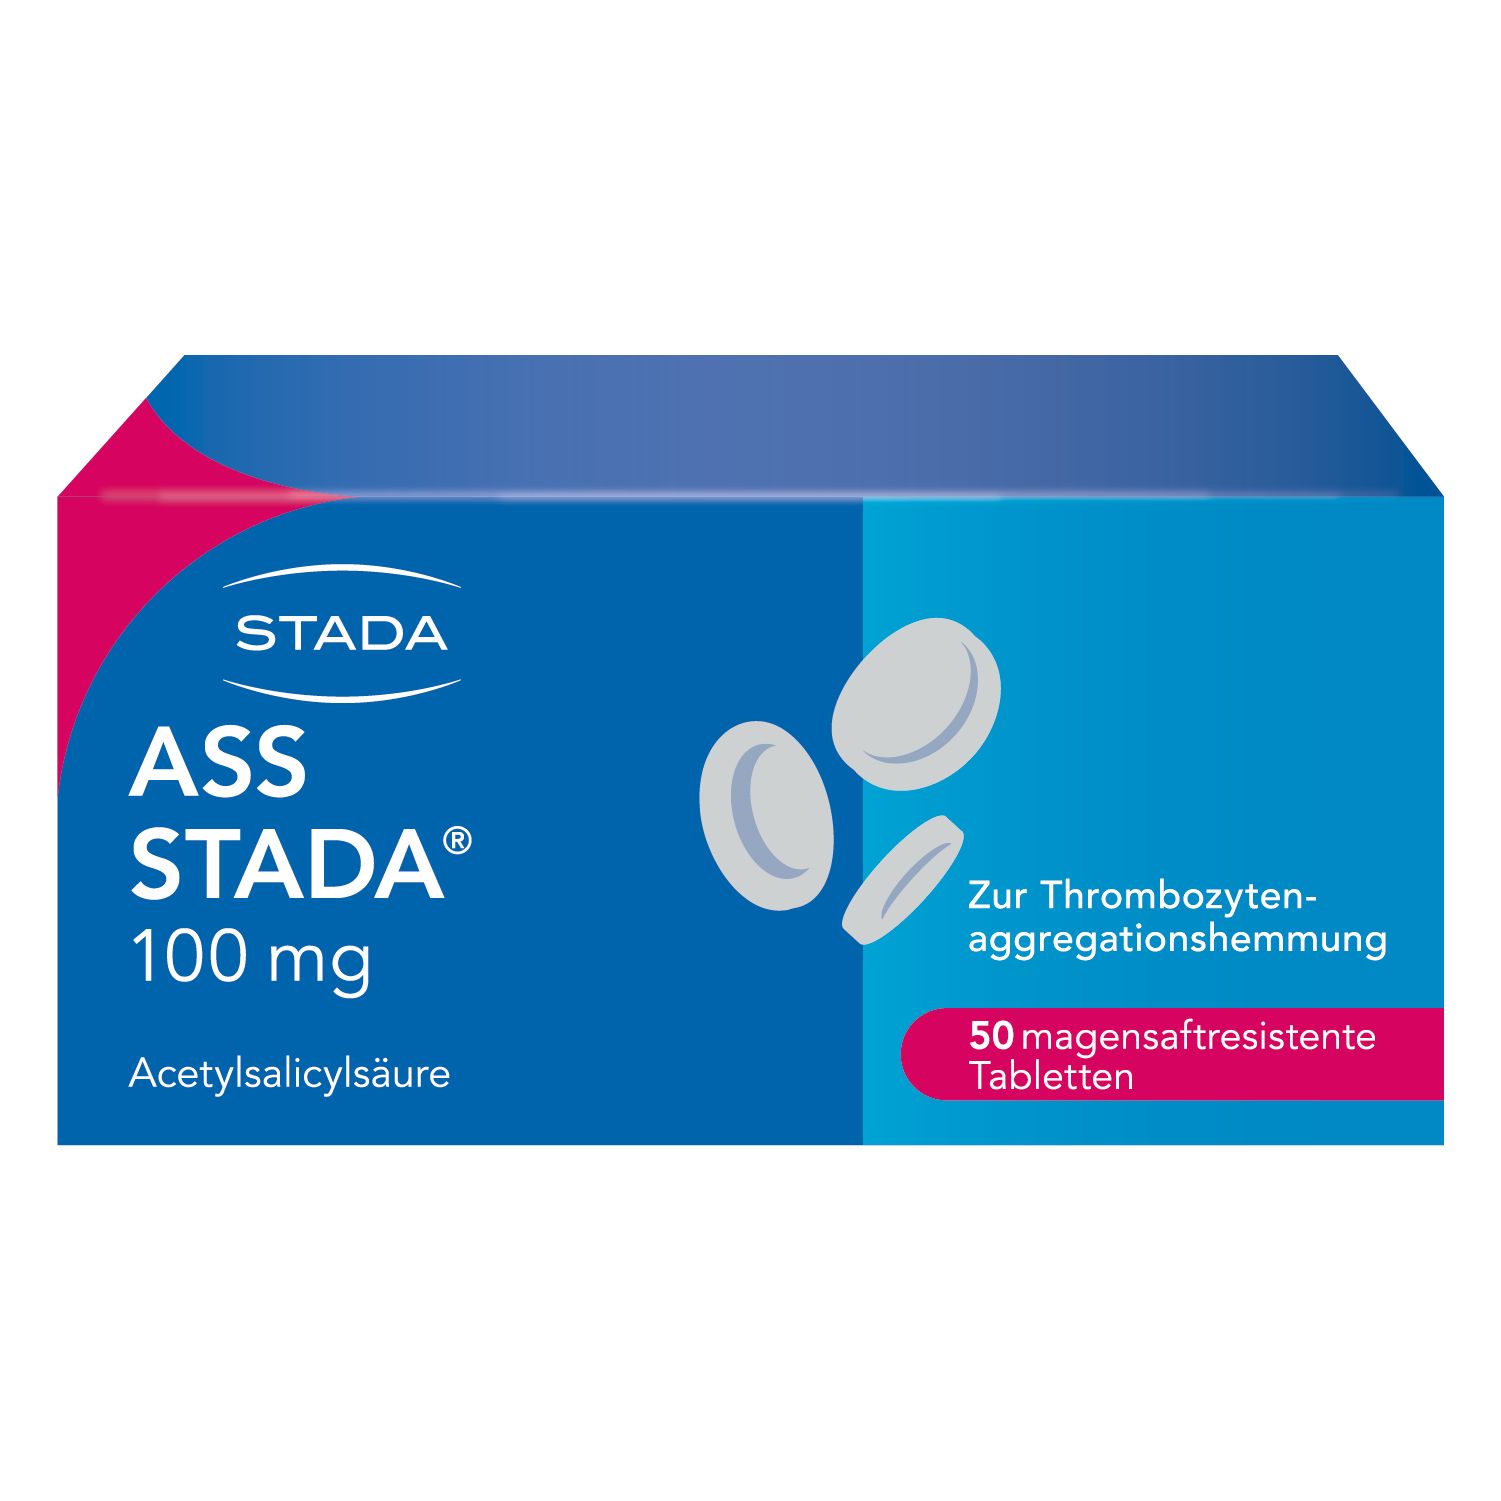 ASS Stada® 100 mg magensaftresistente Tabletten zur Vorbeugung von Herzinfarkt und Schlaganfall bei vorbelasteten Patien